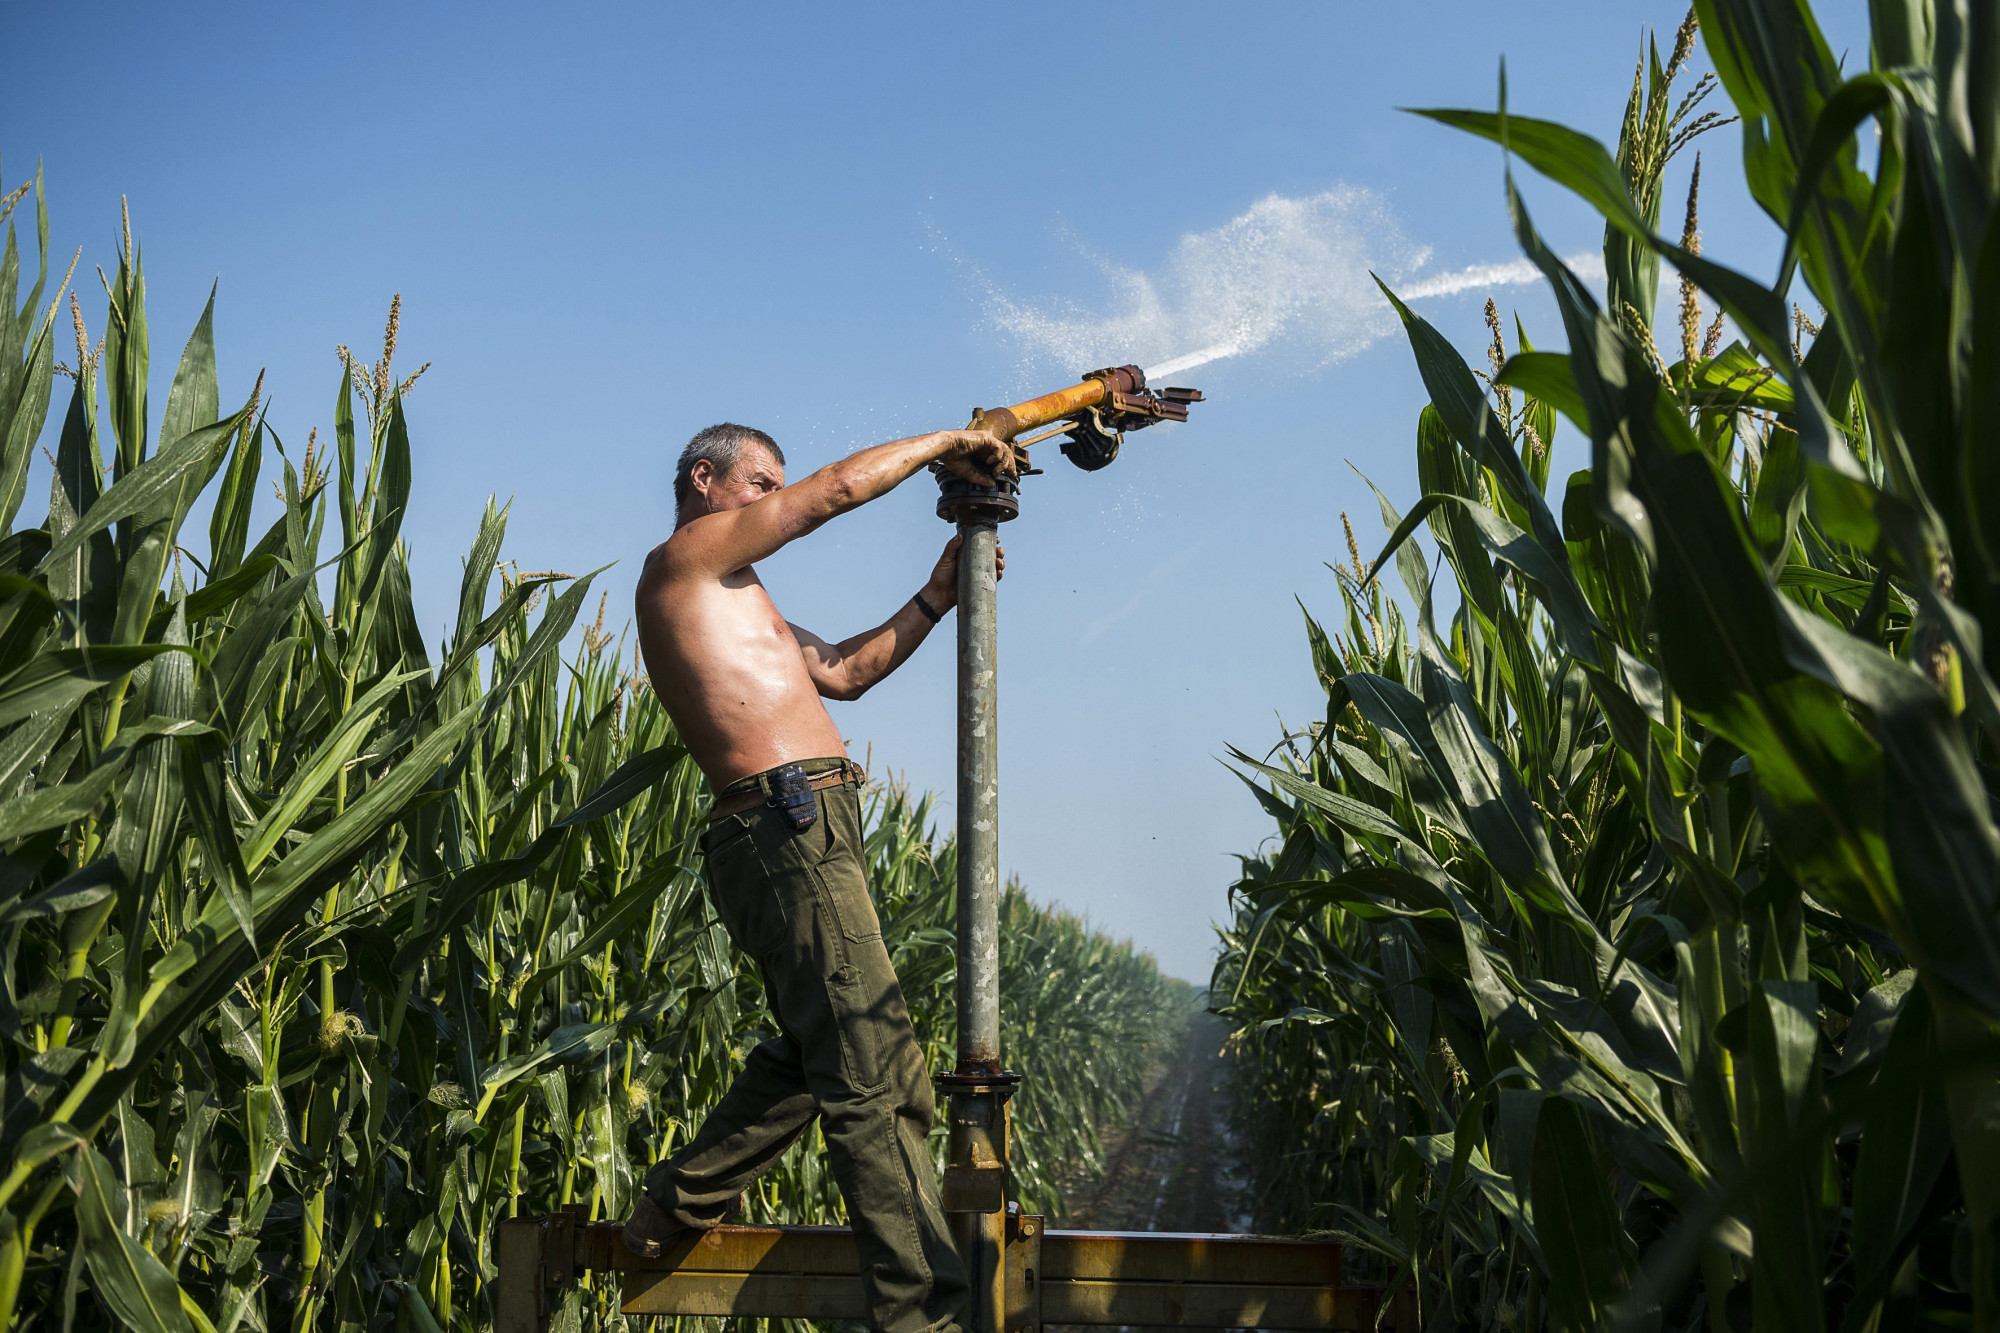 Szántóföldi öntözés az ófehértói kukoricásban 2015. július 6-án